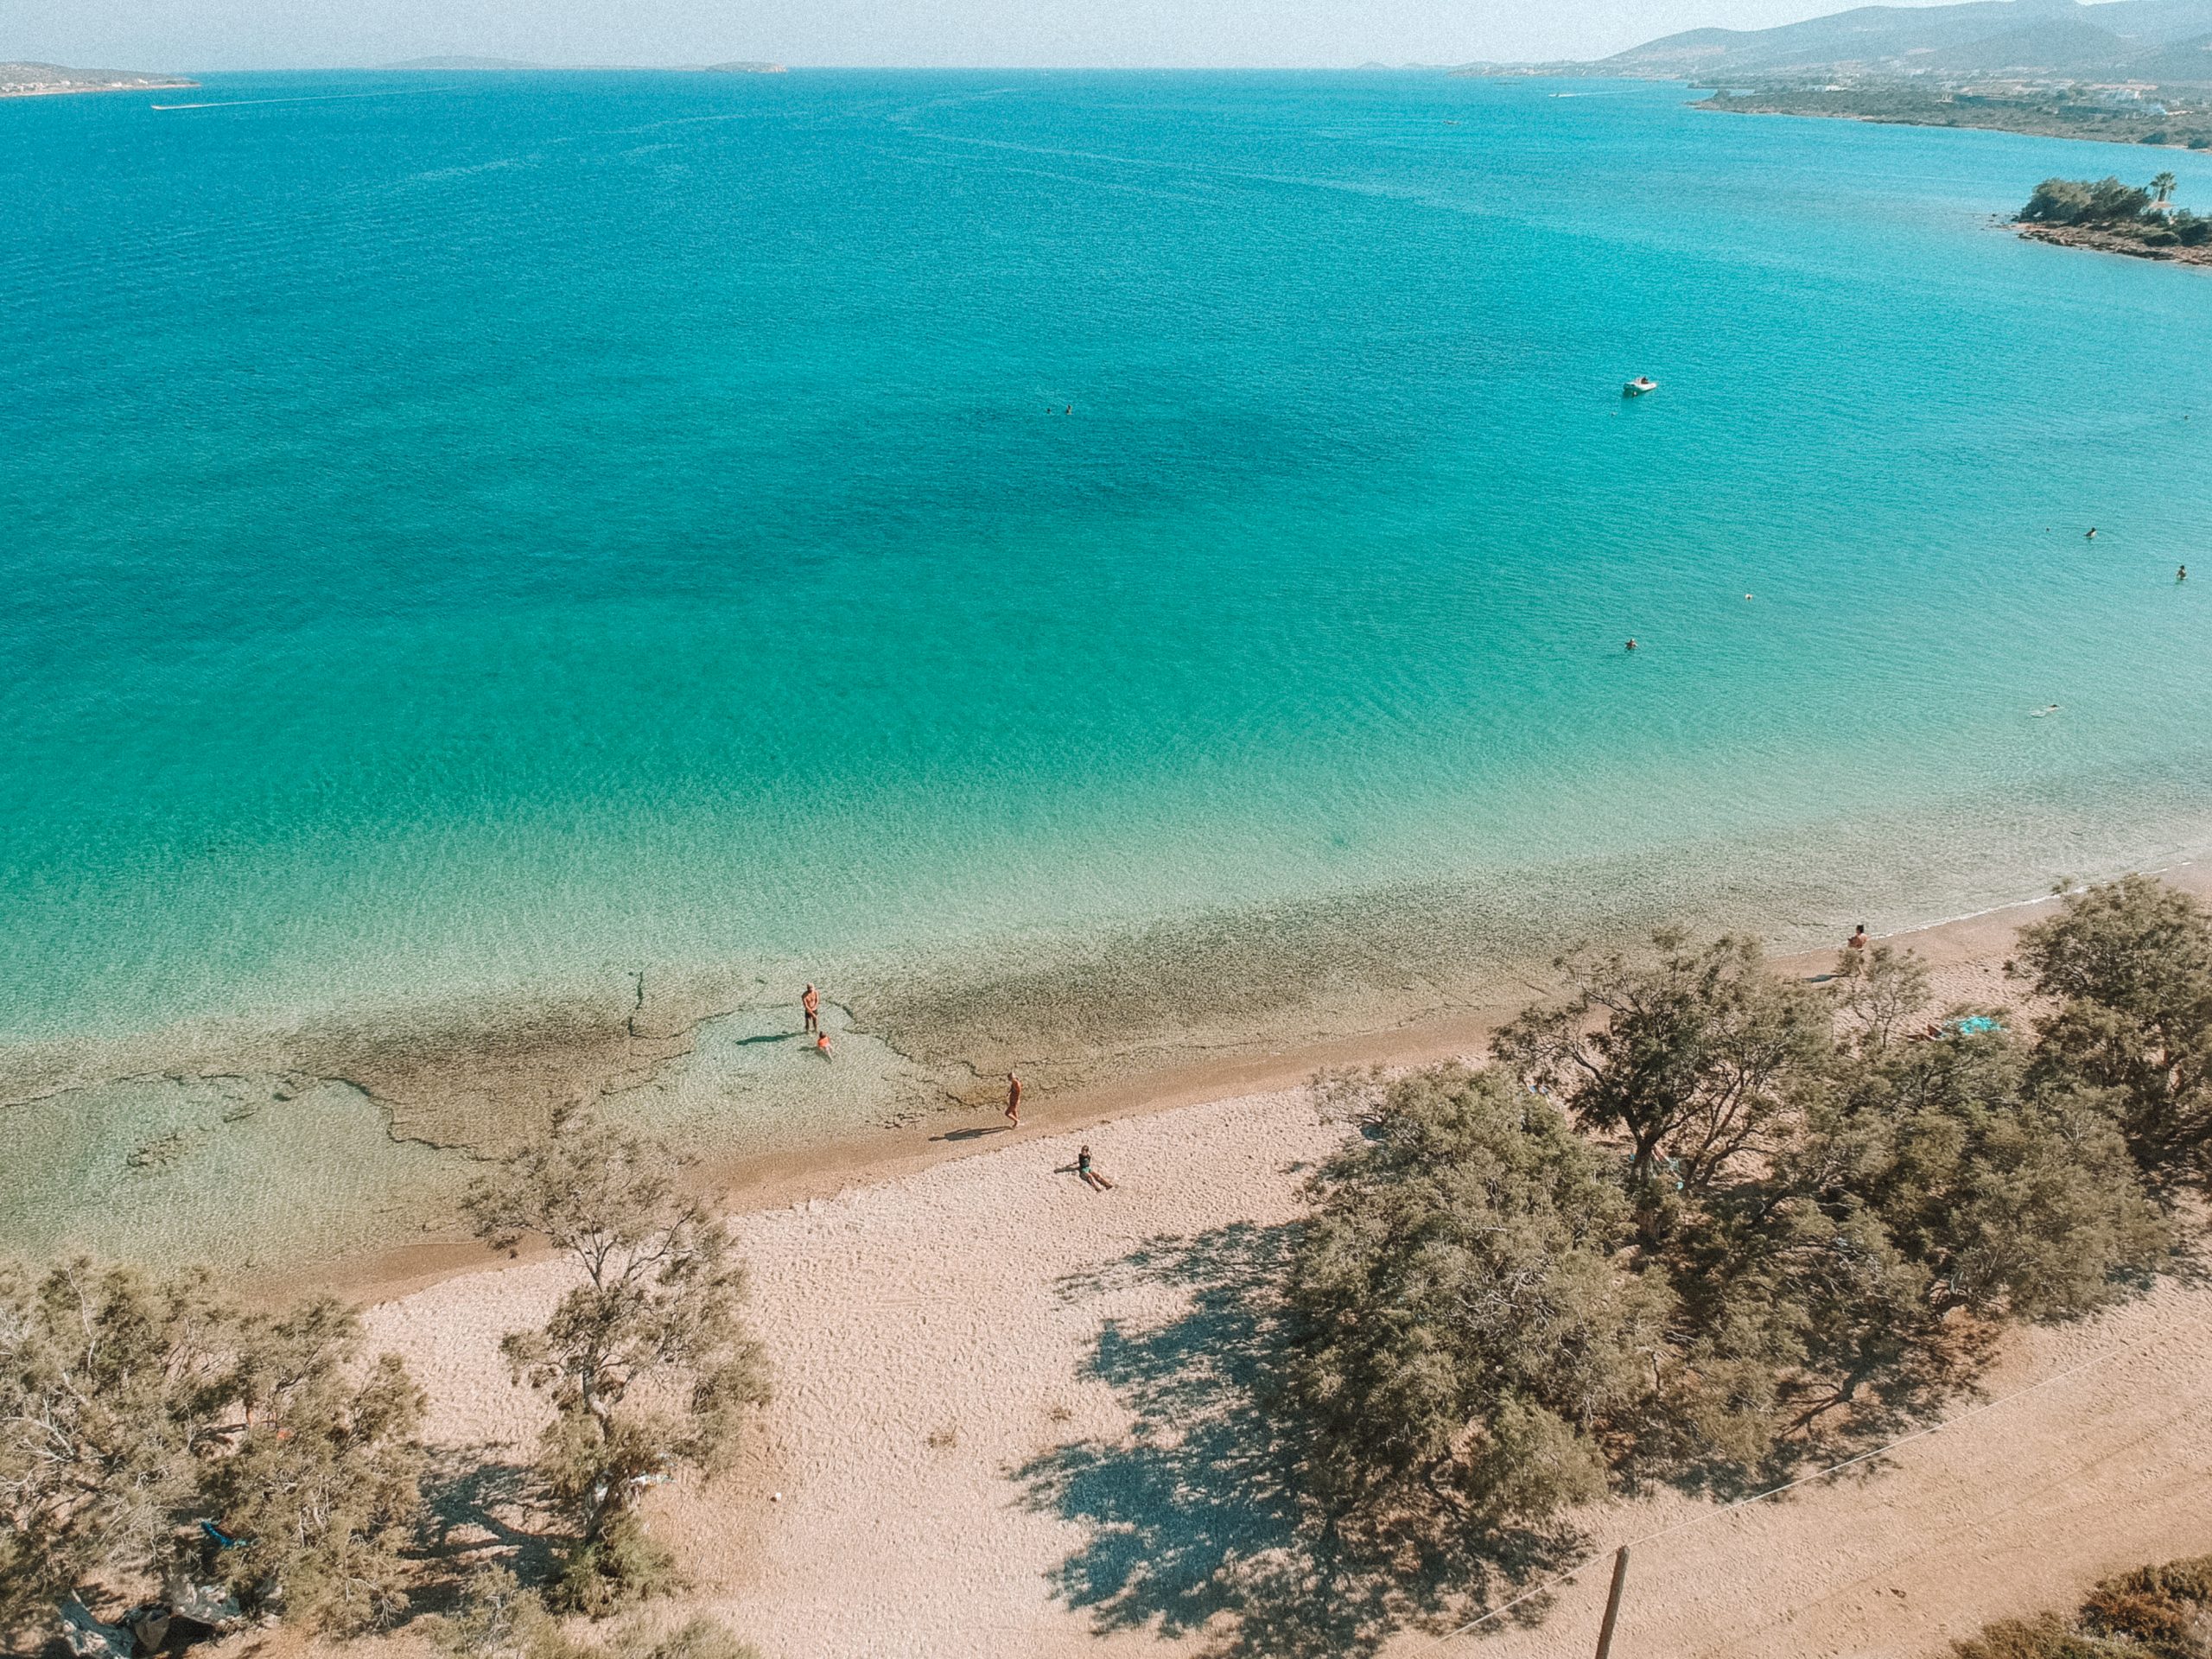 Blue, turquoise sea at Psaralyki in Antiparos. Antiparos travel blog